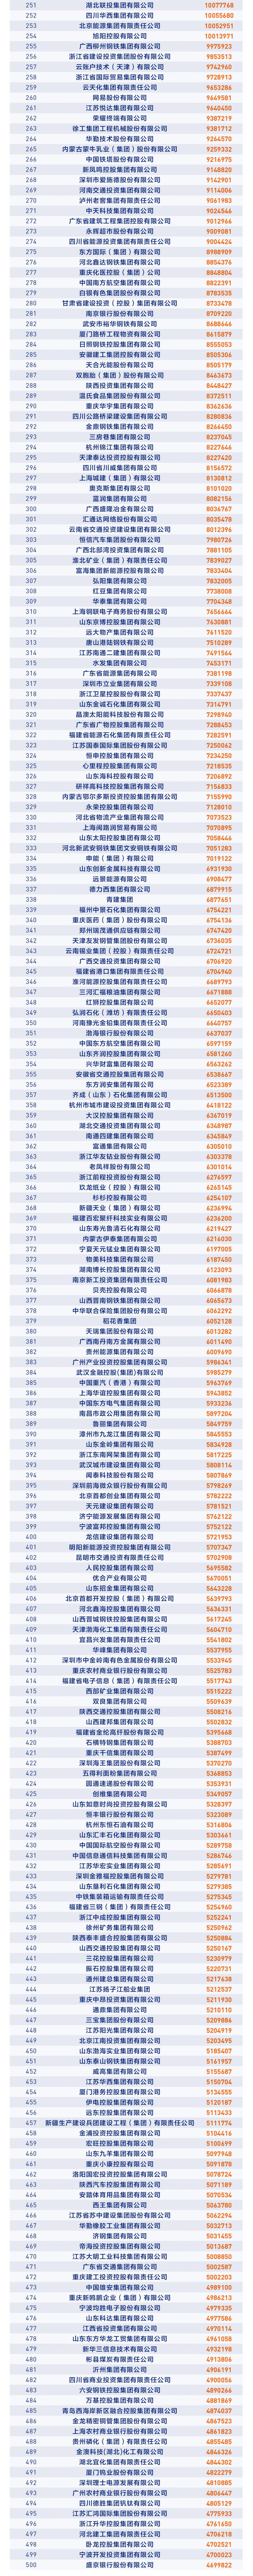 中国收入排行_全国人均收入排名!|广州|湖州|温州|绍兴_网易订阅